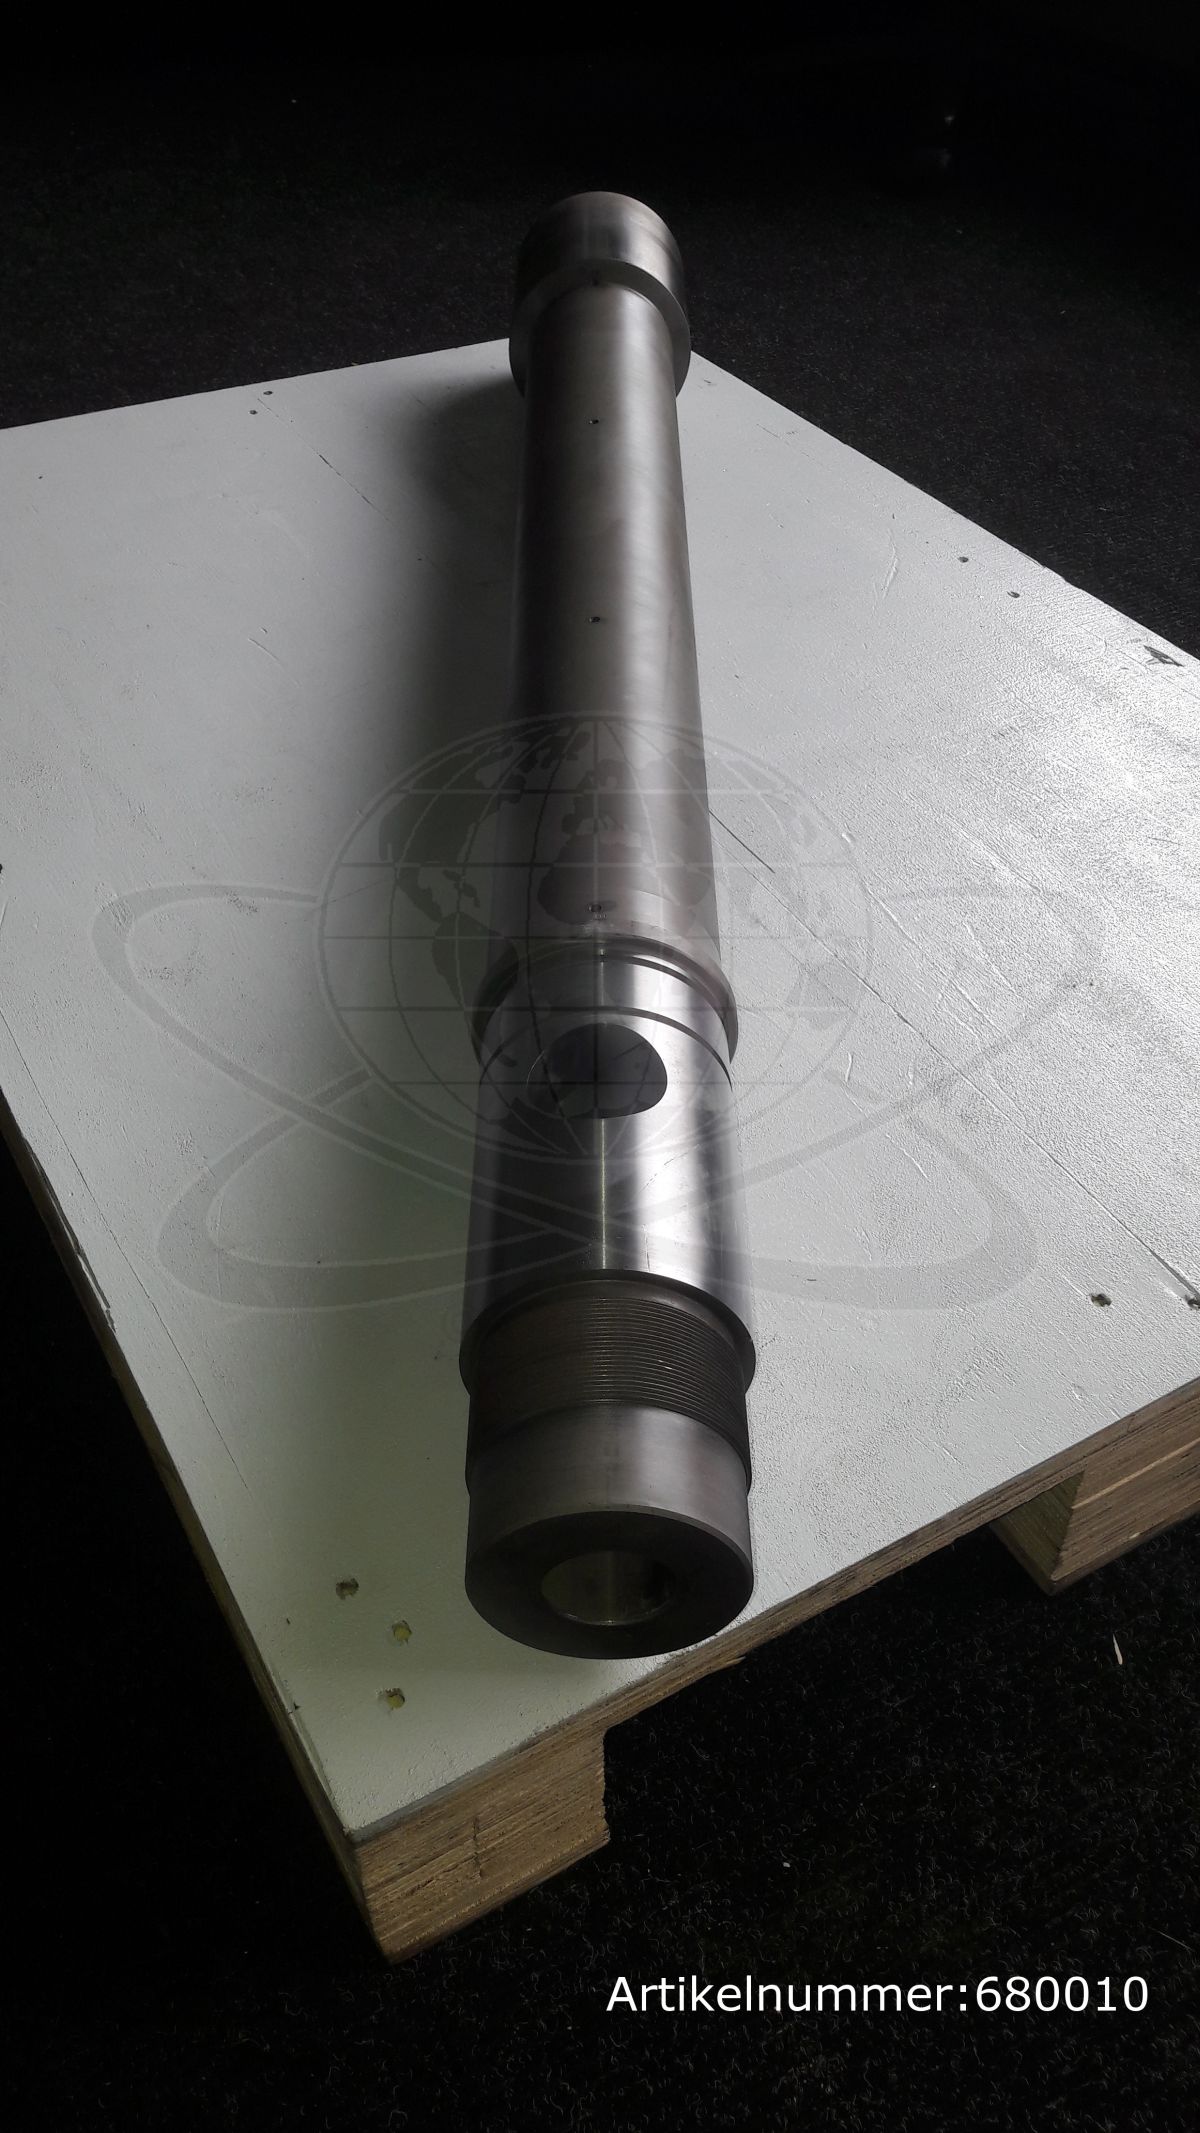 Ferromatik Milacron Schneckenzylinder, Plastifizierzylinder IU440, Ø 45 mm nitriert